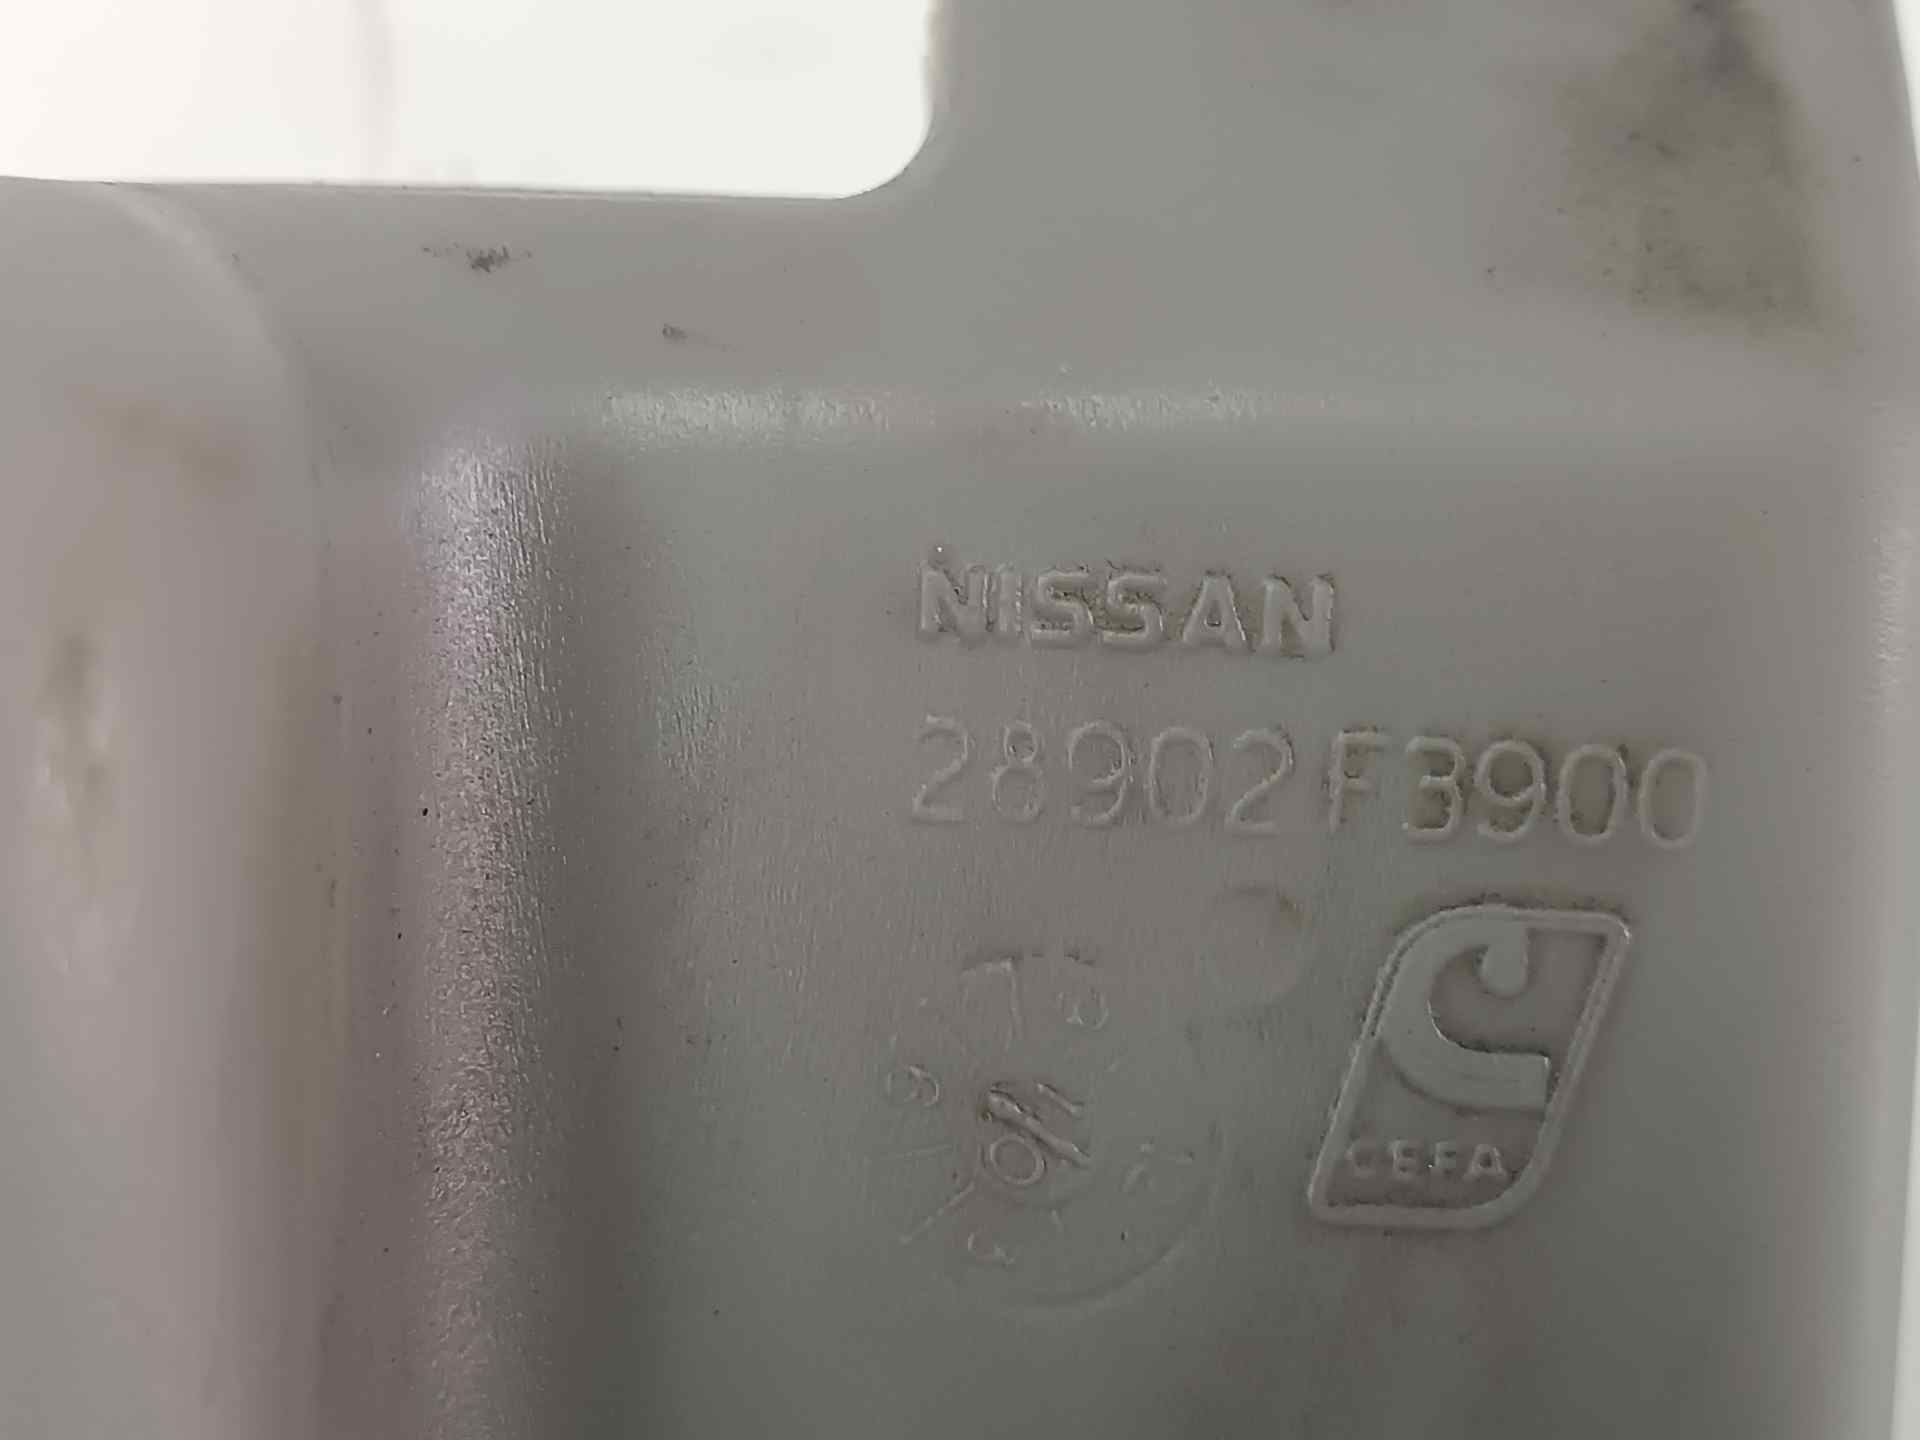 NISSAN Window Washer Tank 28902F3900, 28902F3900 24583401